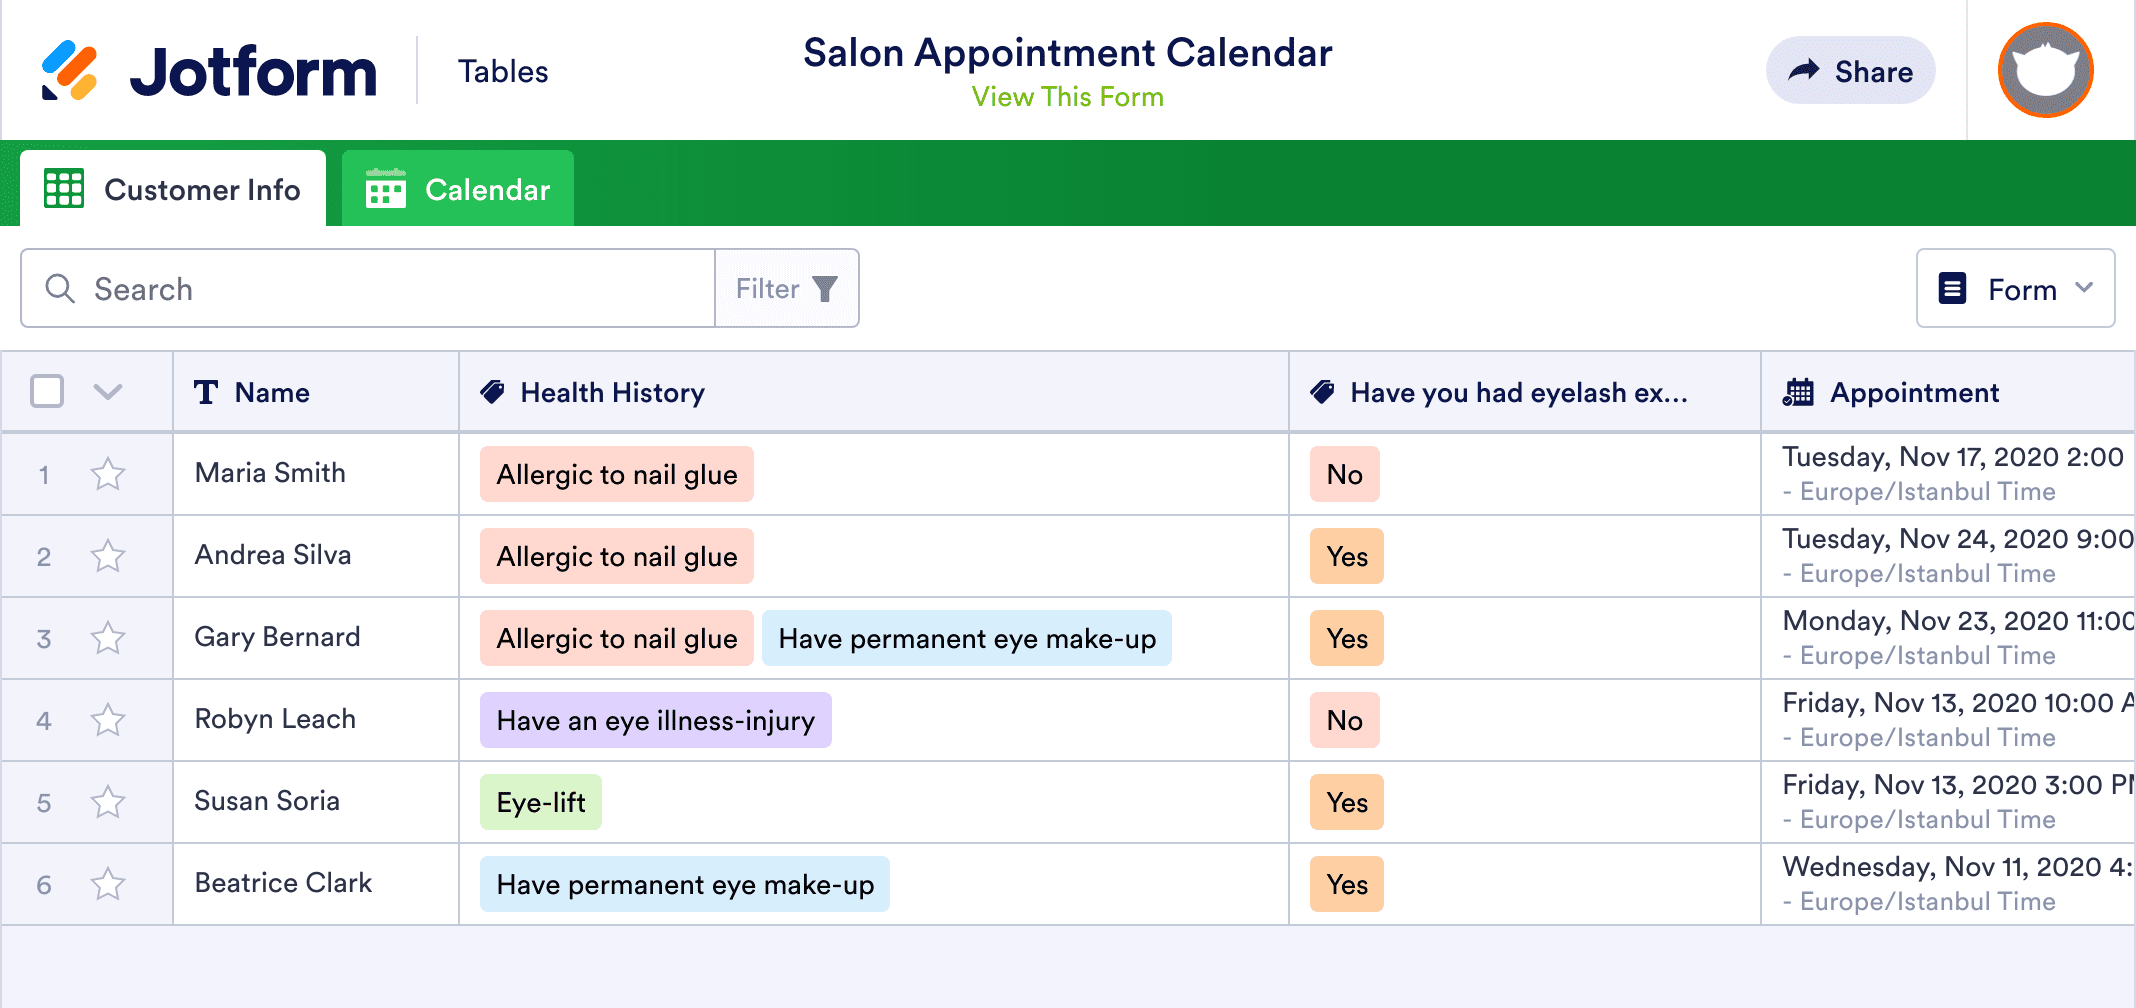 Salon Appointment Calendar Template | Jotform Tables